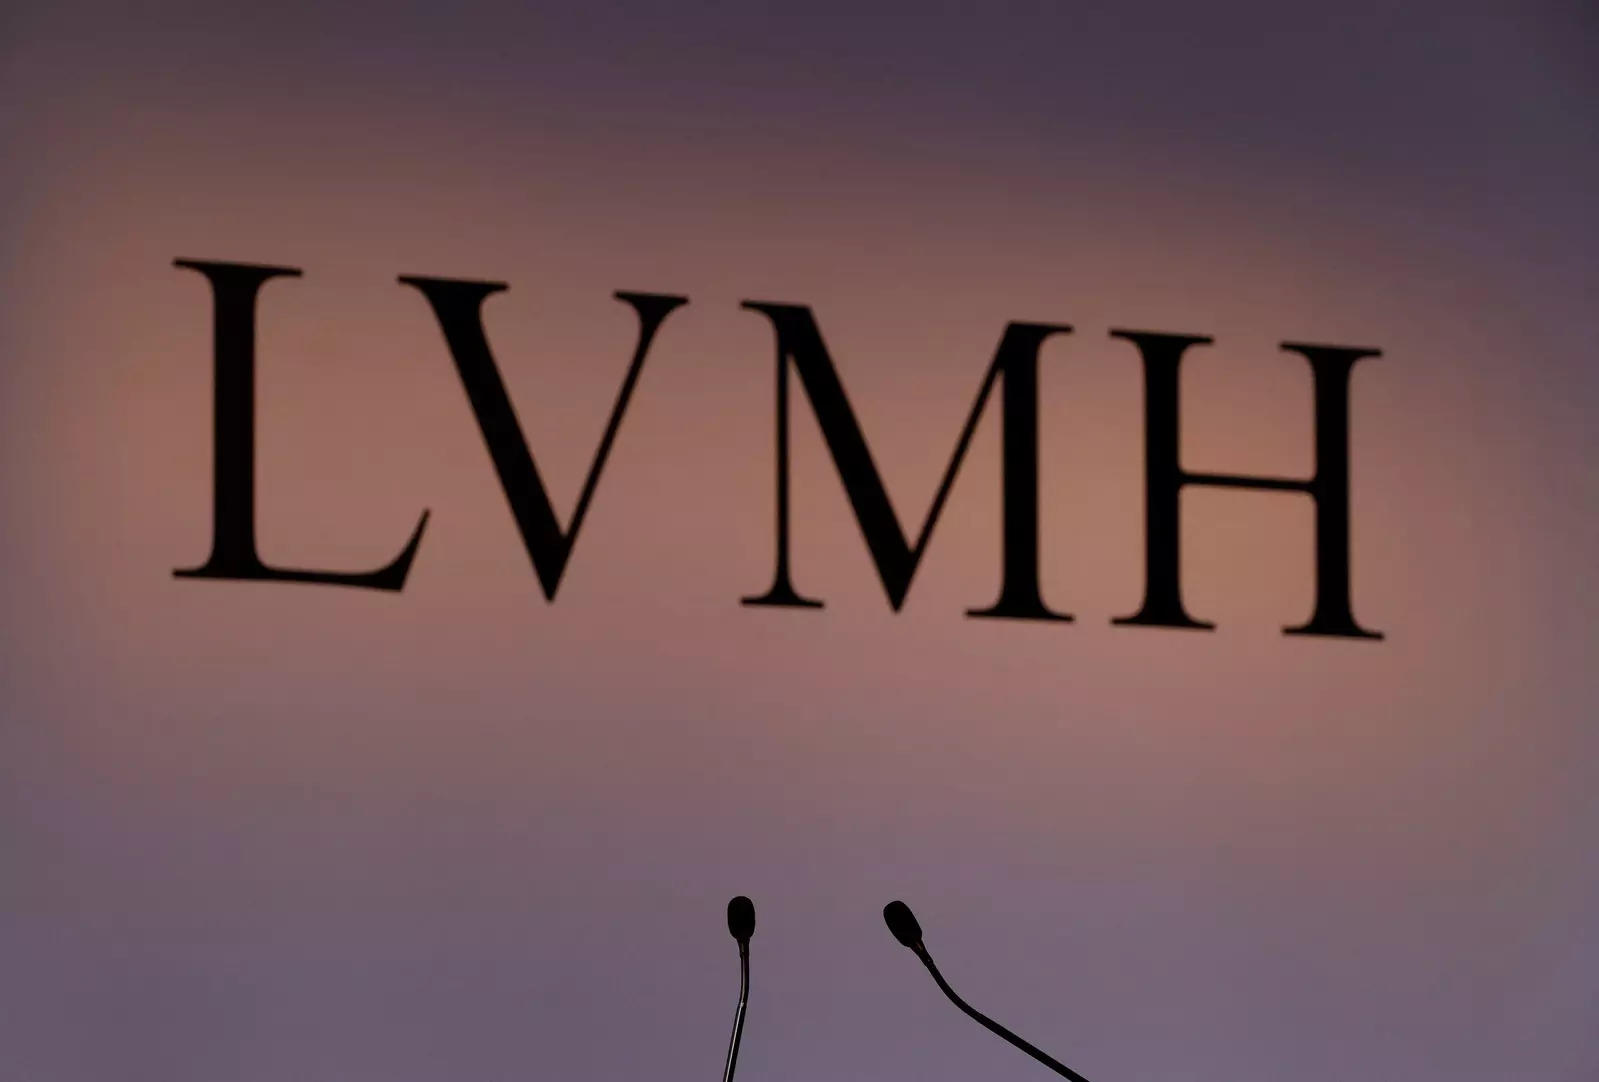 Louis Vuitton, Dior Drive LVMH's COVID Comeback